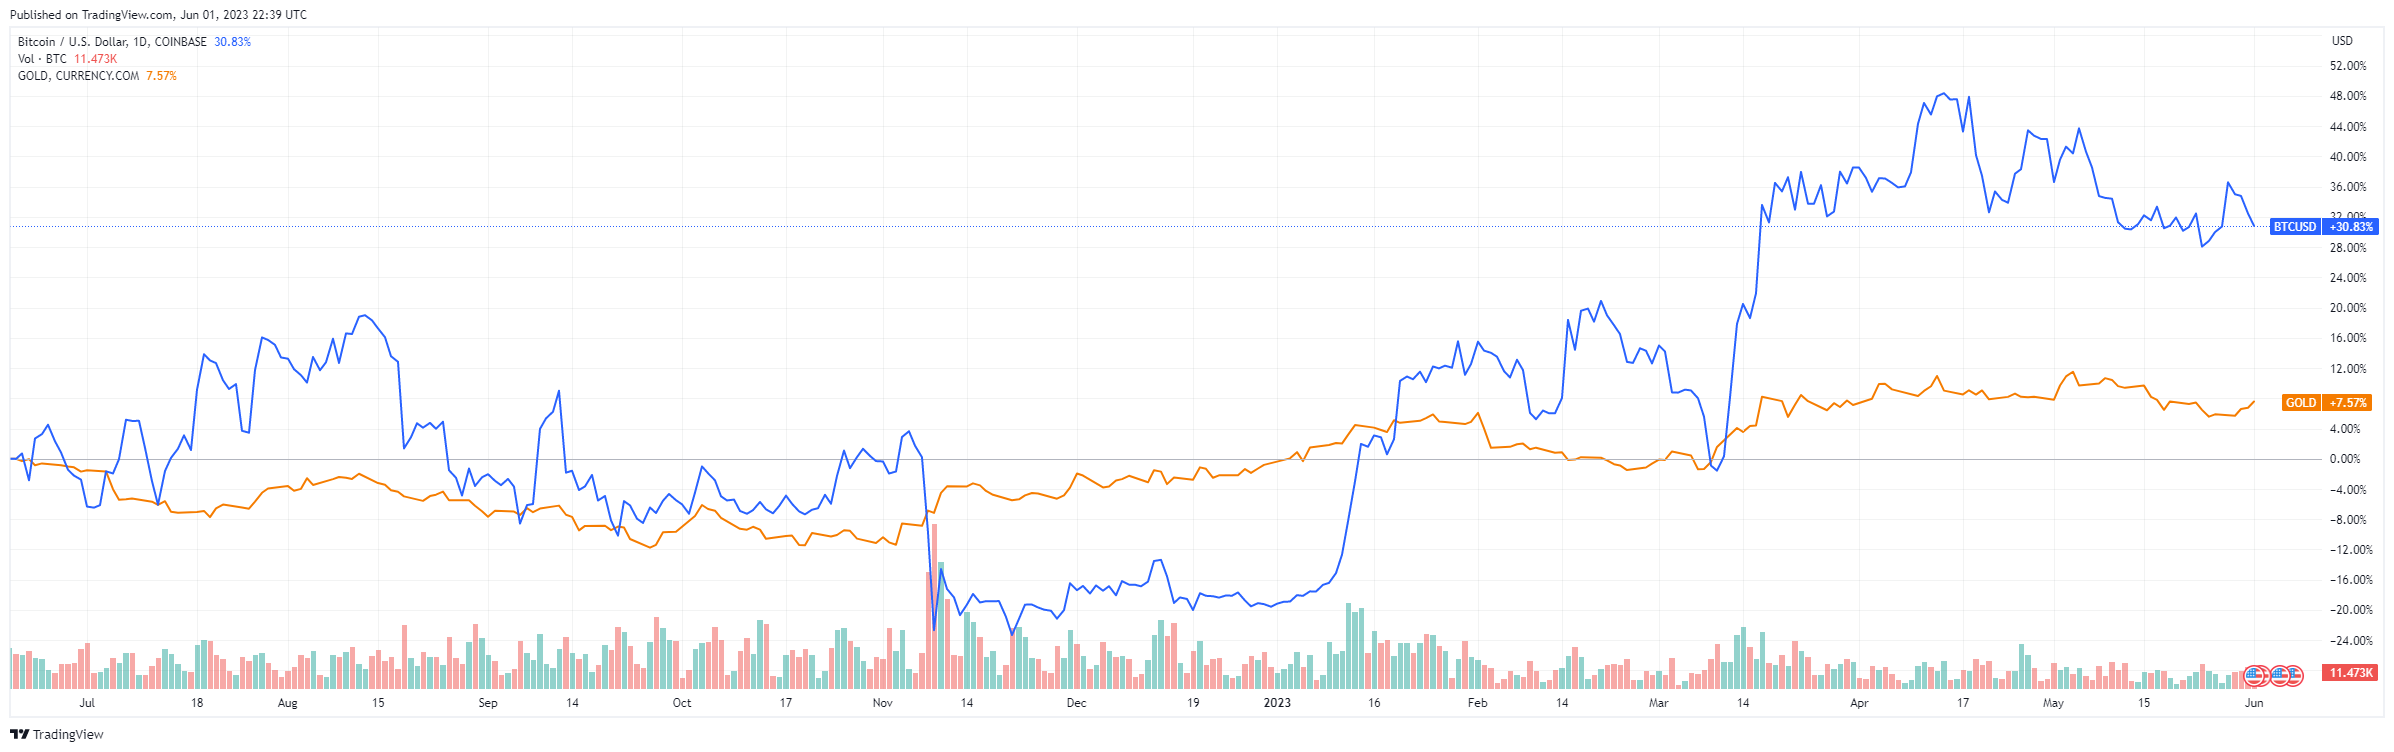 Gráfico de líneas que muestra el movimiento de precios de bitcoin y oro